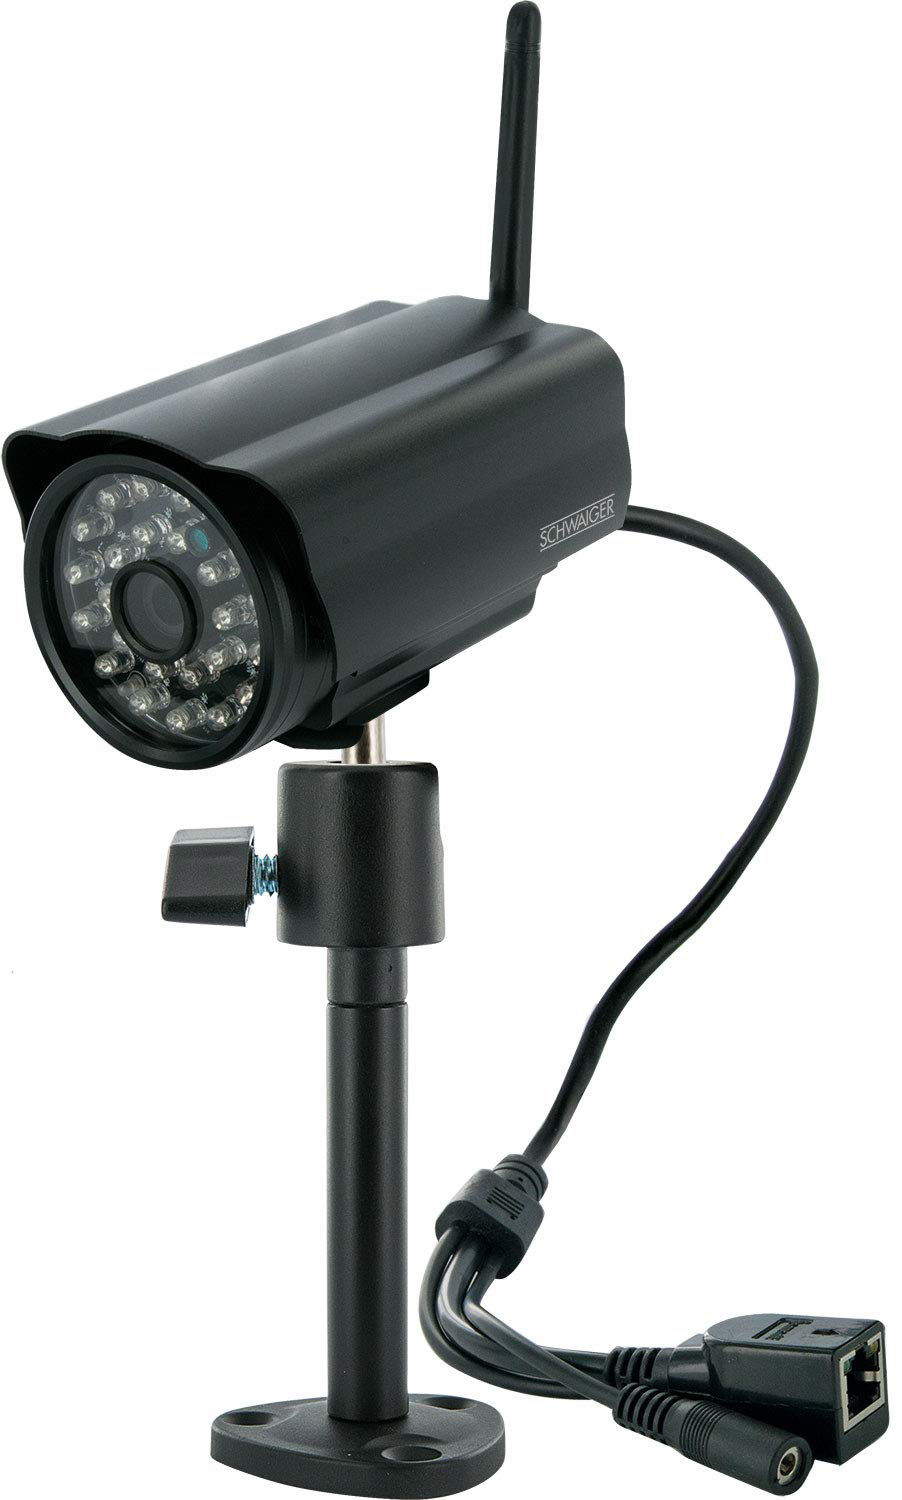 Auflösung Überwachungskamera, Video: -ZHK17-, SCHWAIGER (1280*720) 720p VGA (640*480),